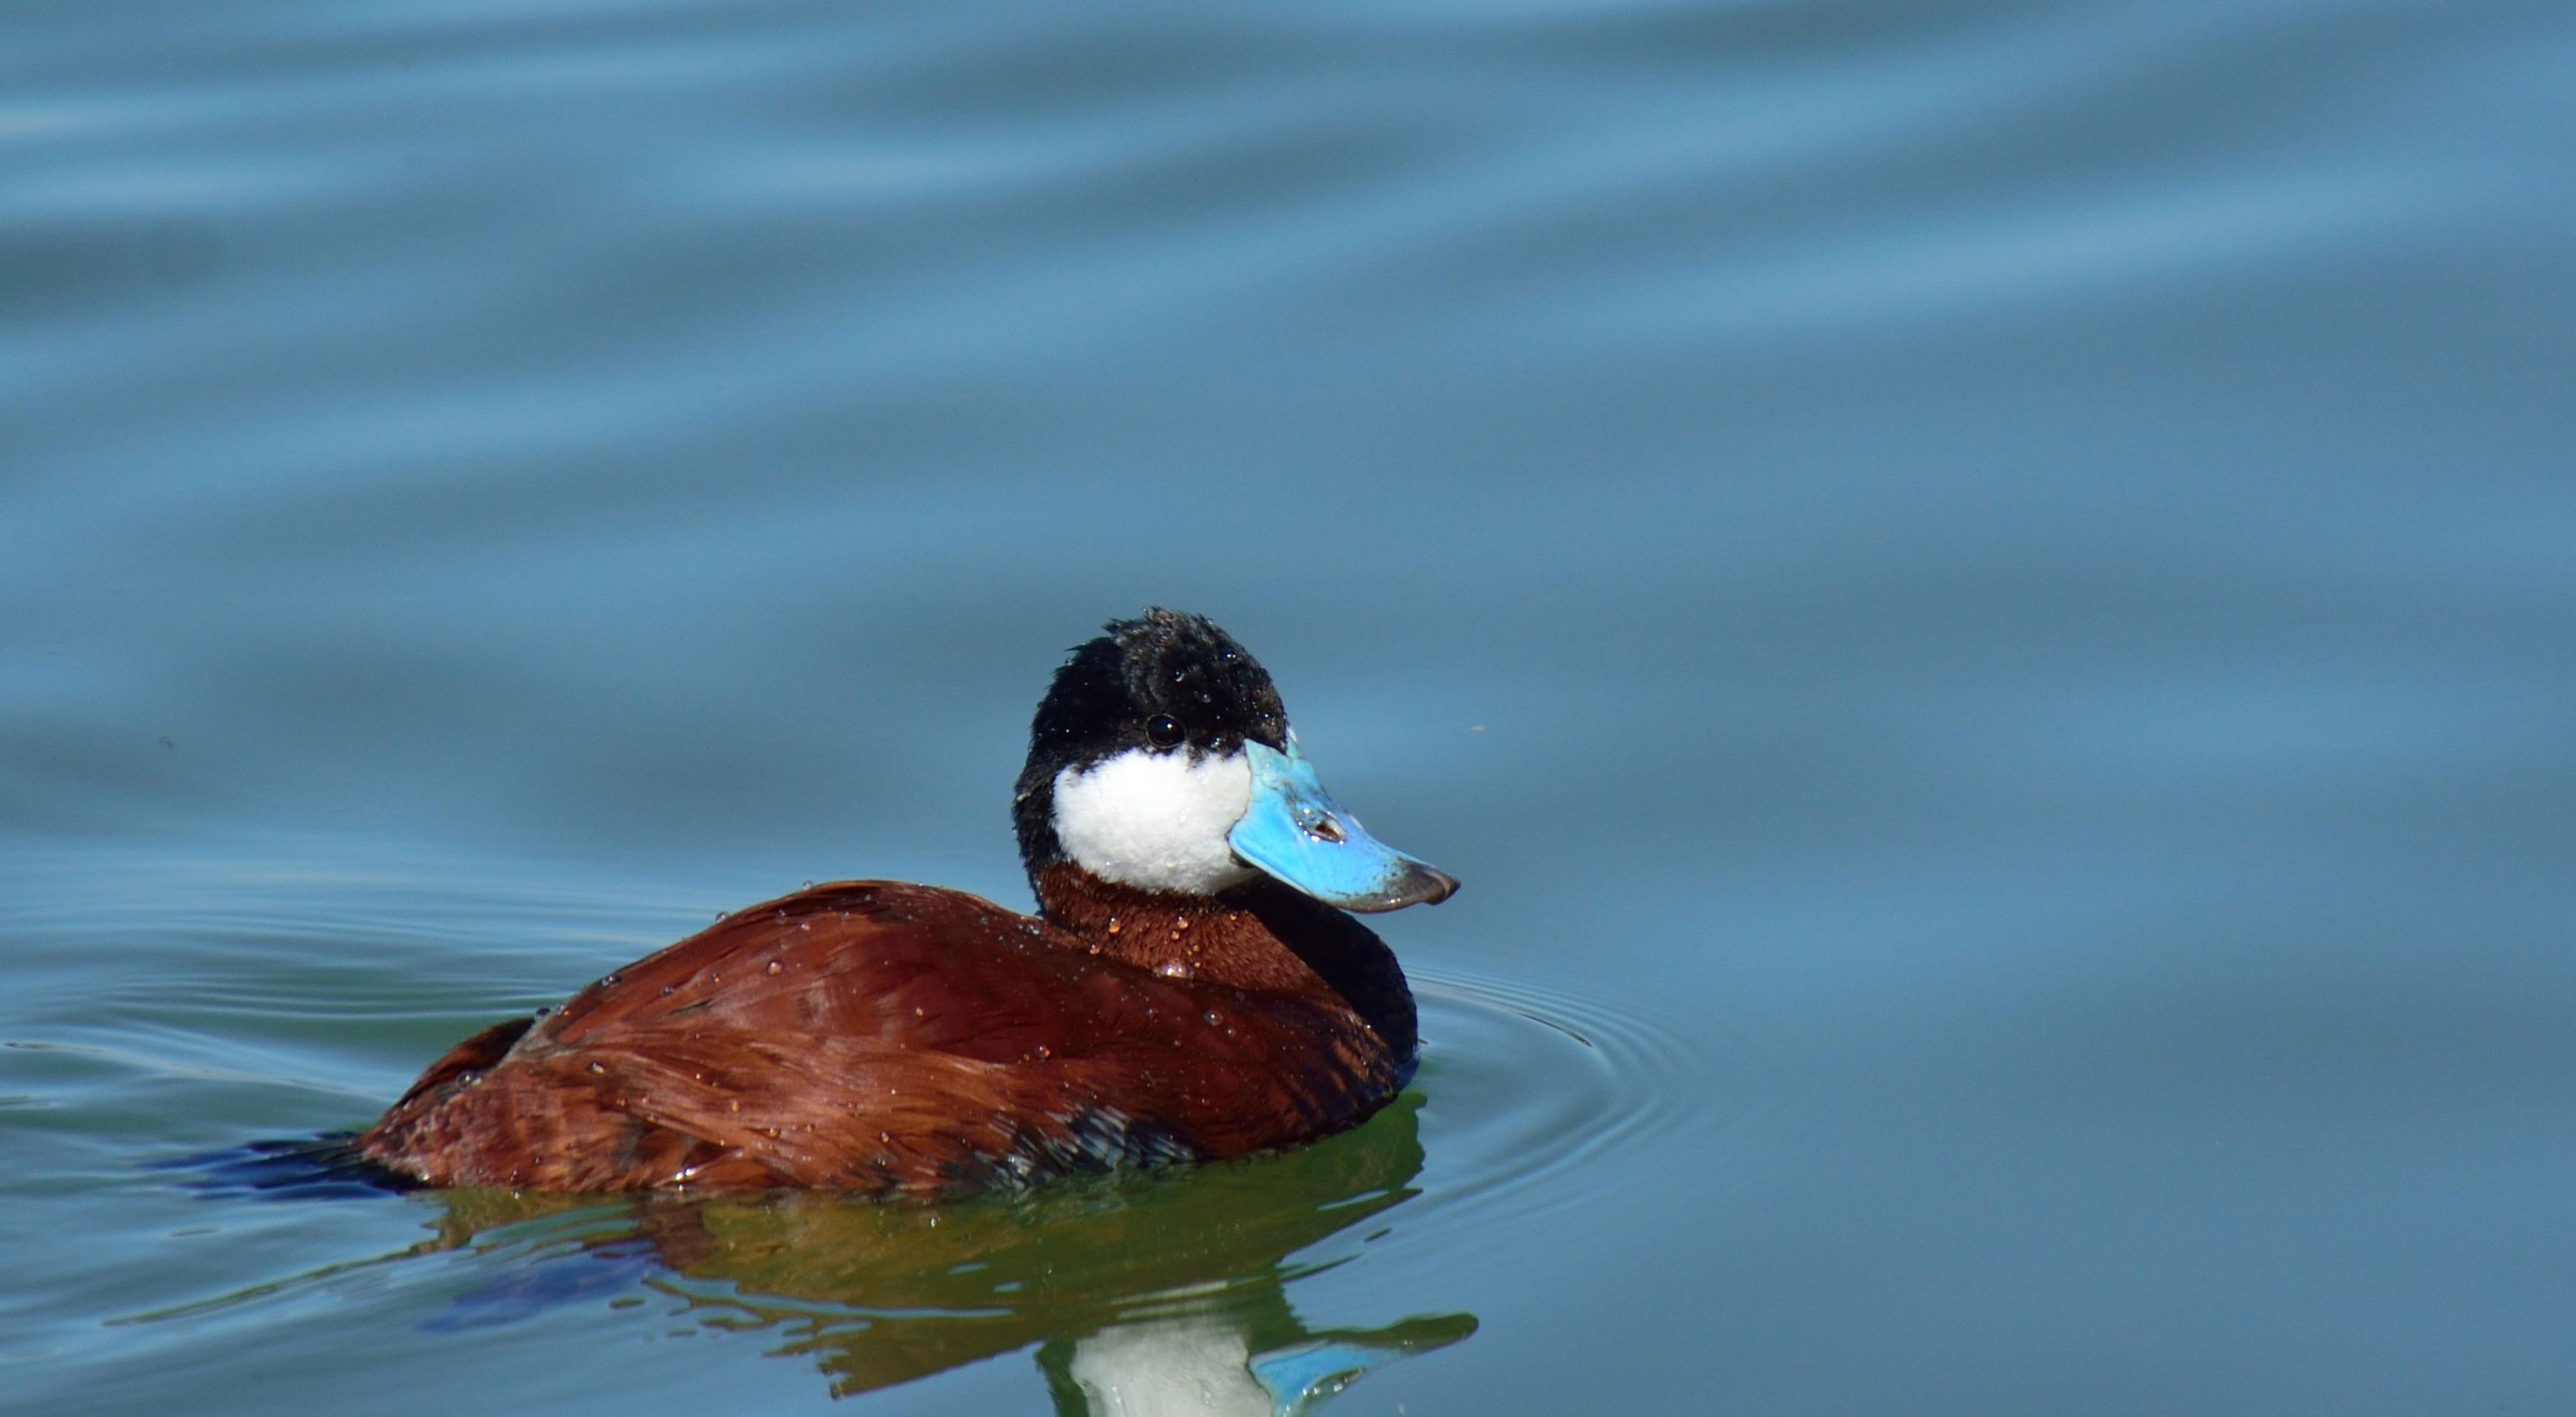 Ruddy duck swimming.